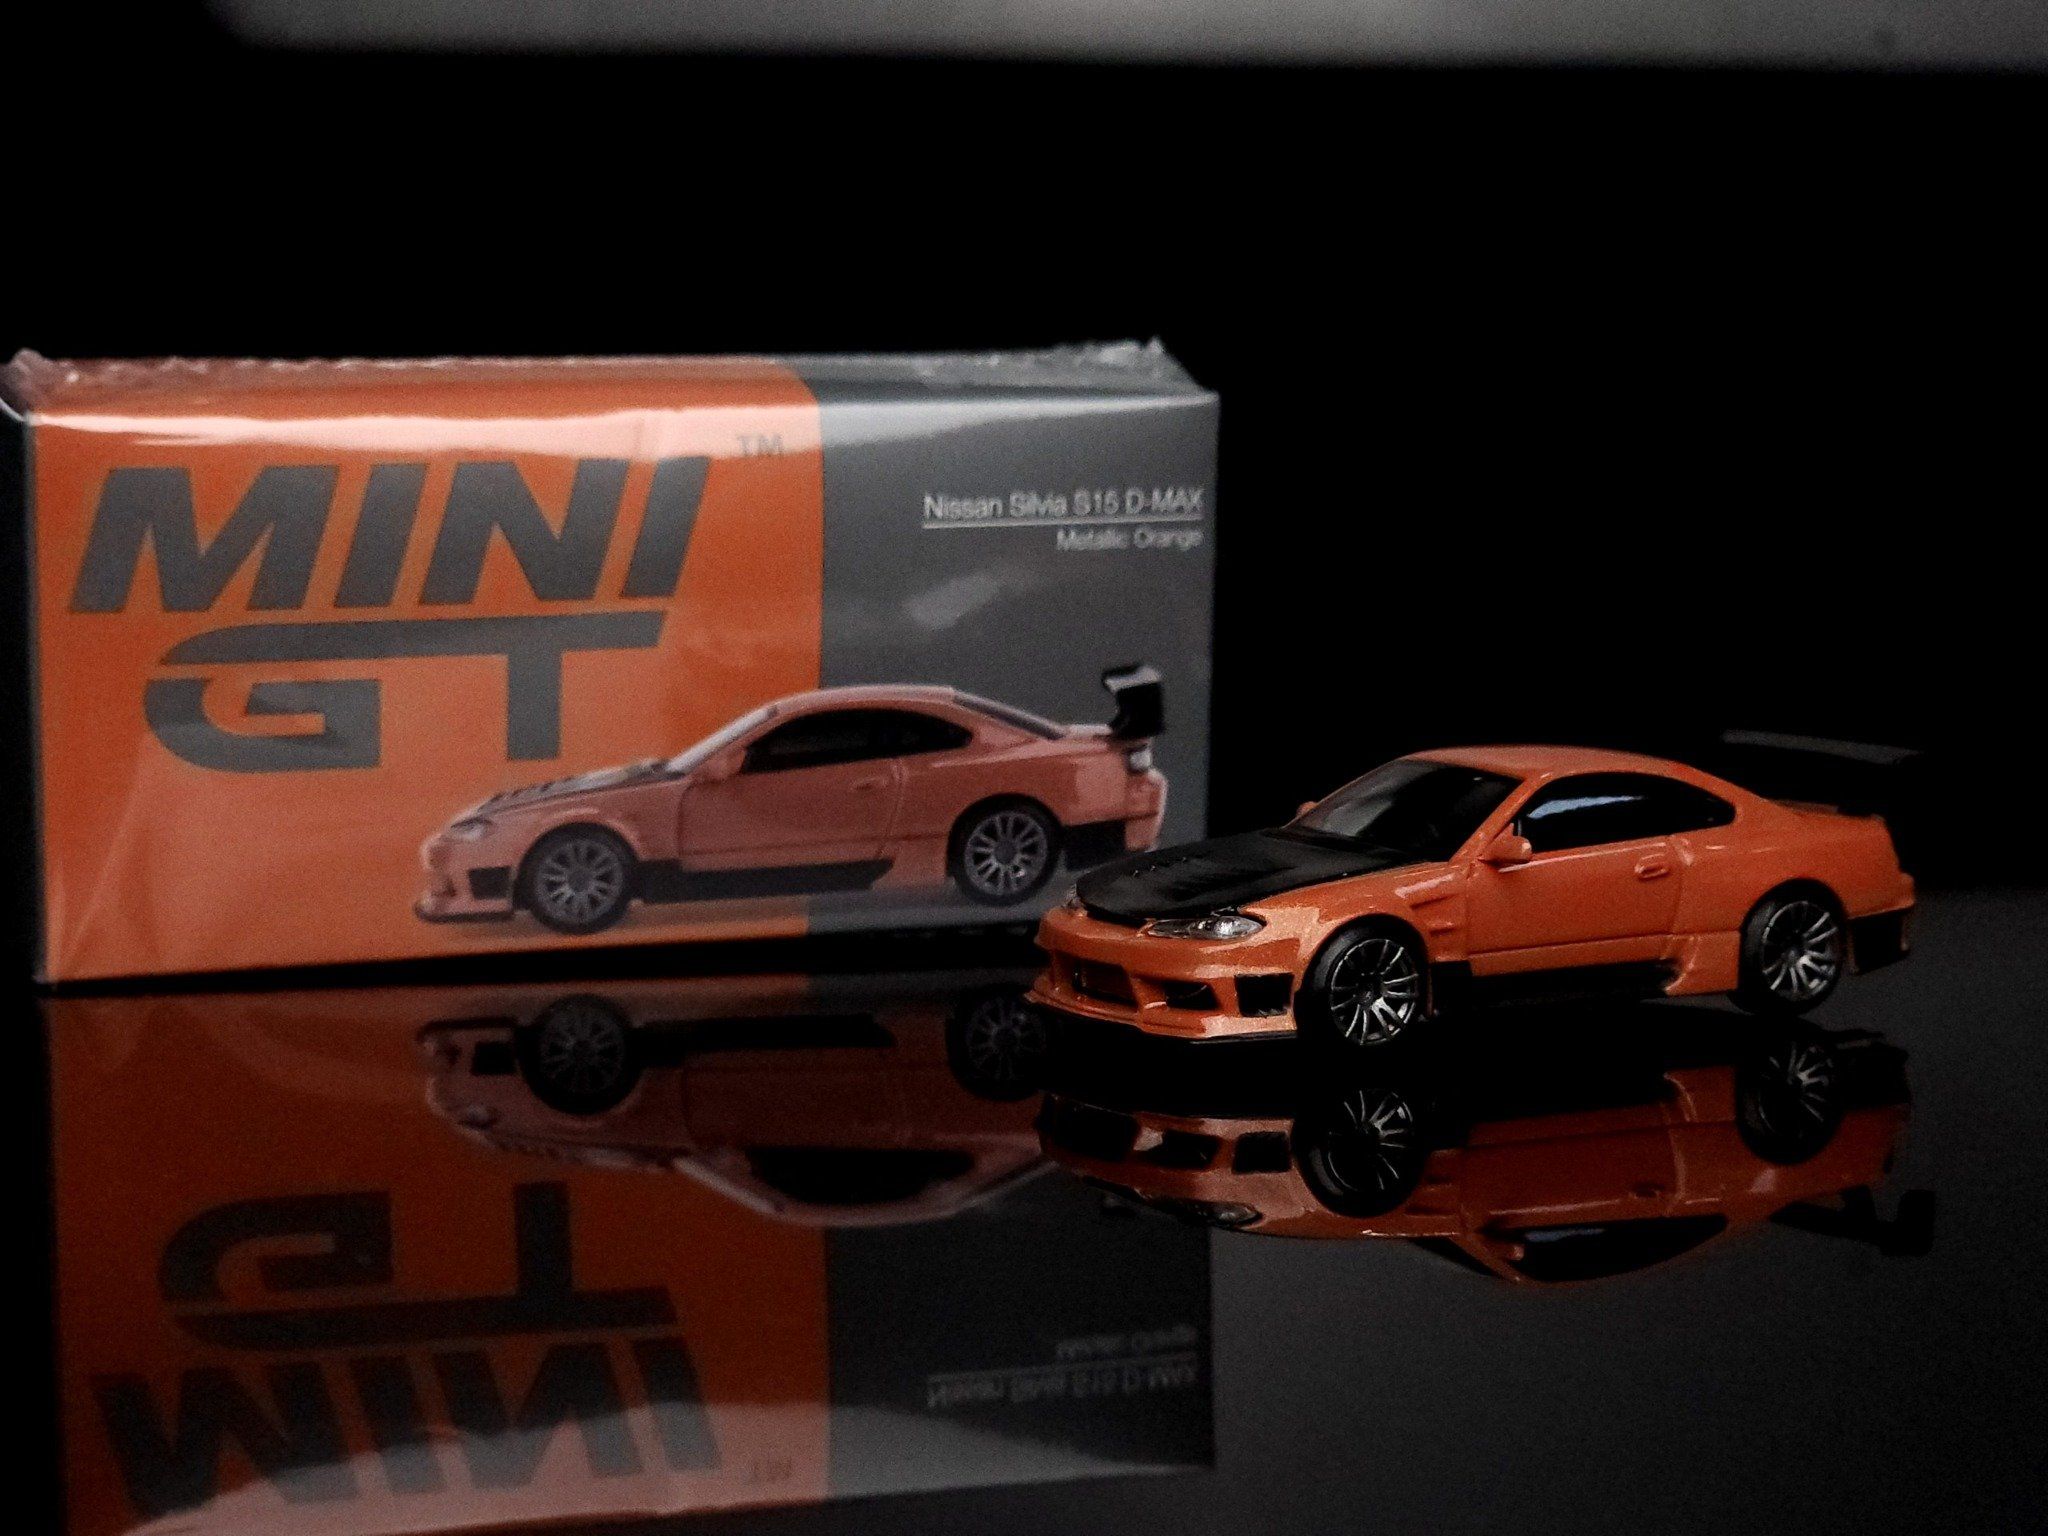 MINIGT 1:64 Nissan Silvia (S15) D-MAX in Metallic Orange